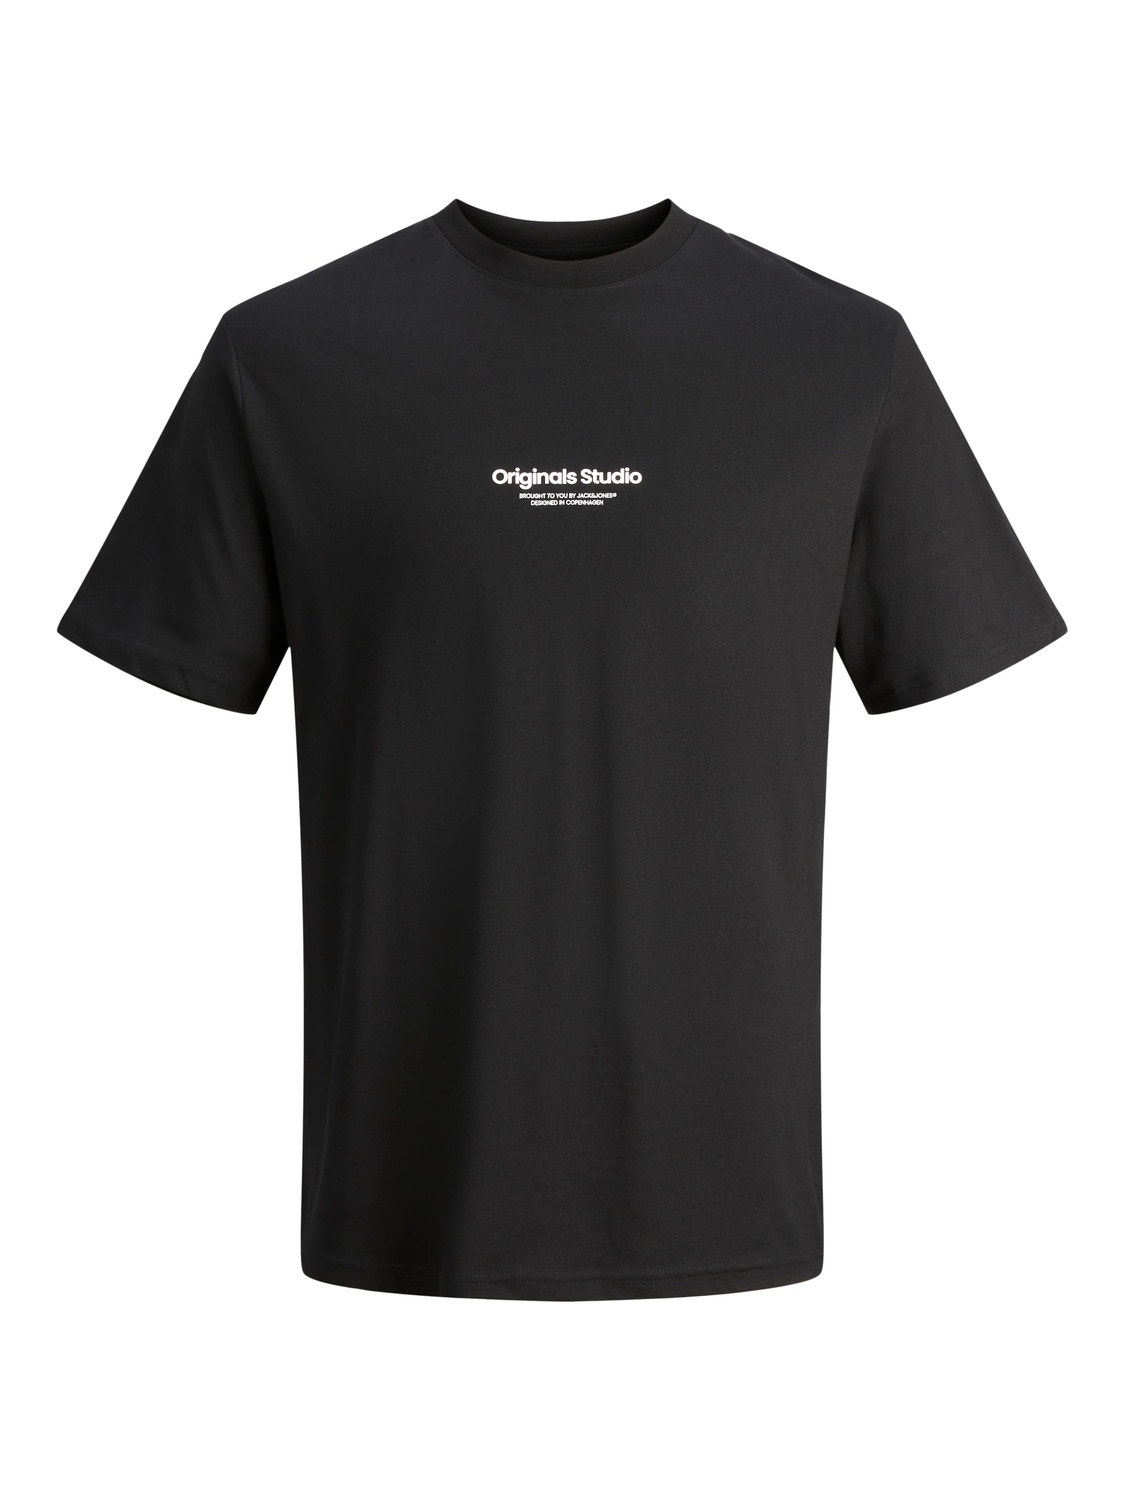 Jack & Jones Plus Size Gedrukt T-shirt -Black - 12248177